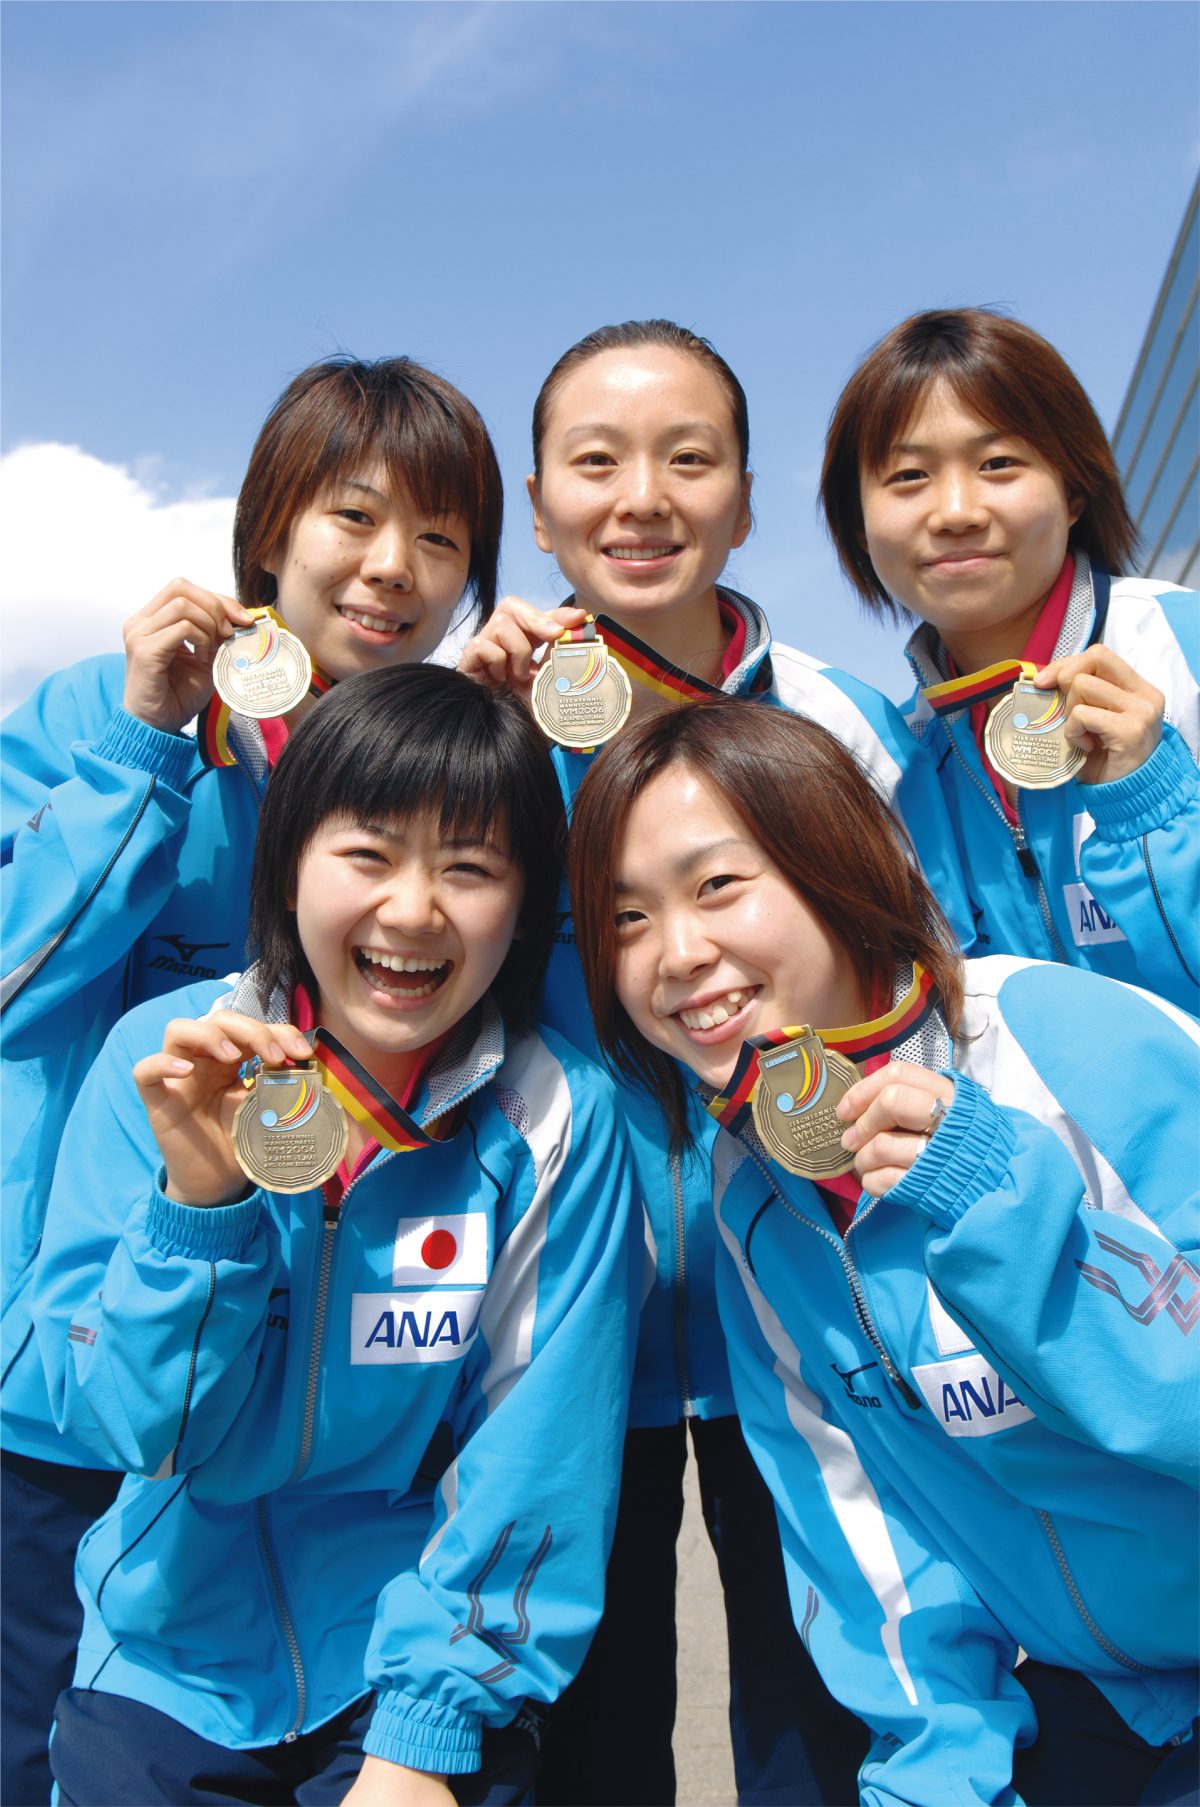 2006年ブレーメン大会で女子団体3位となった日本女子選手団